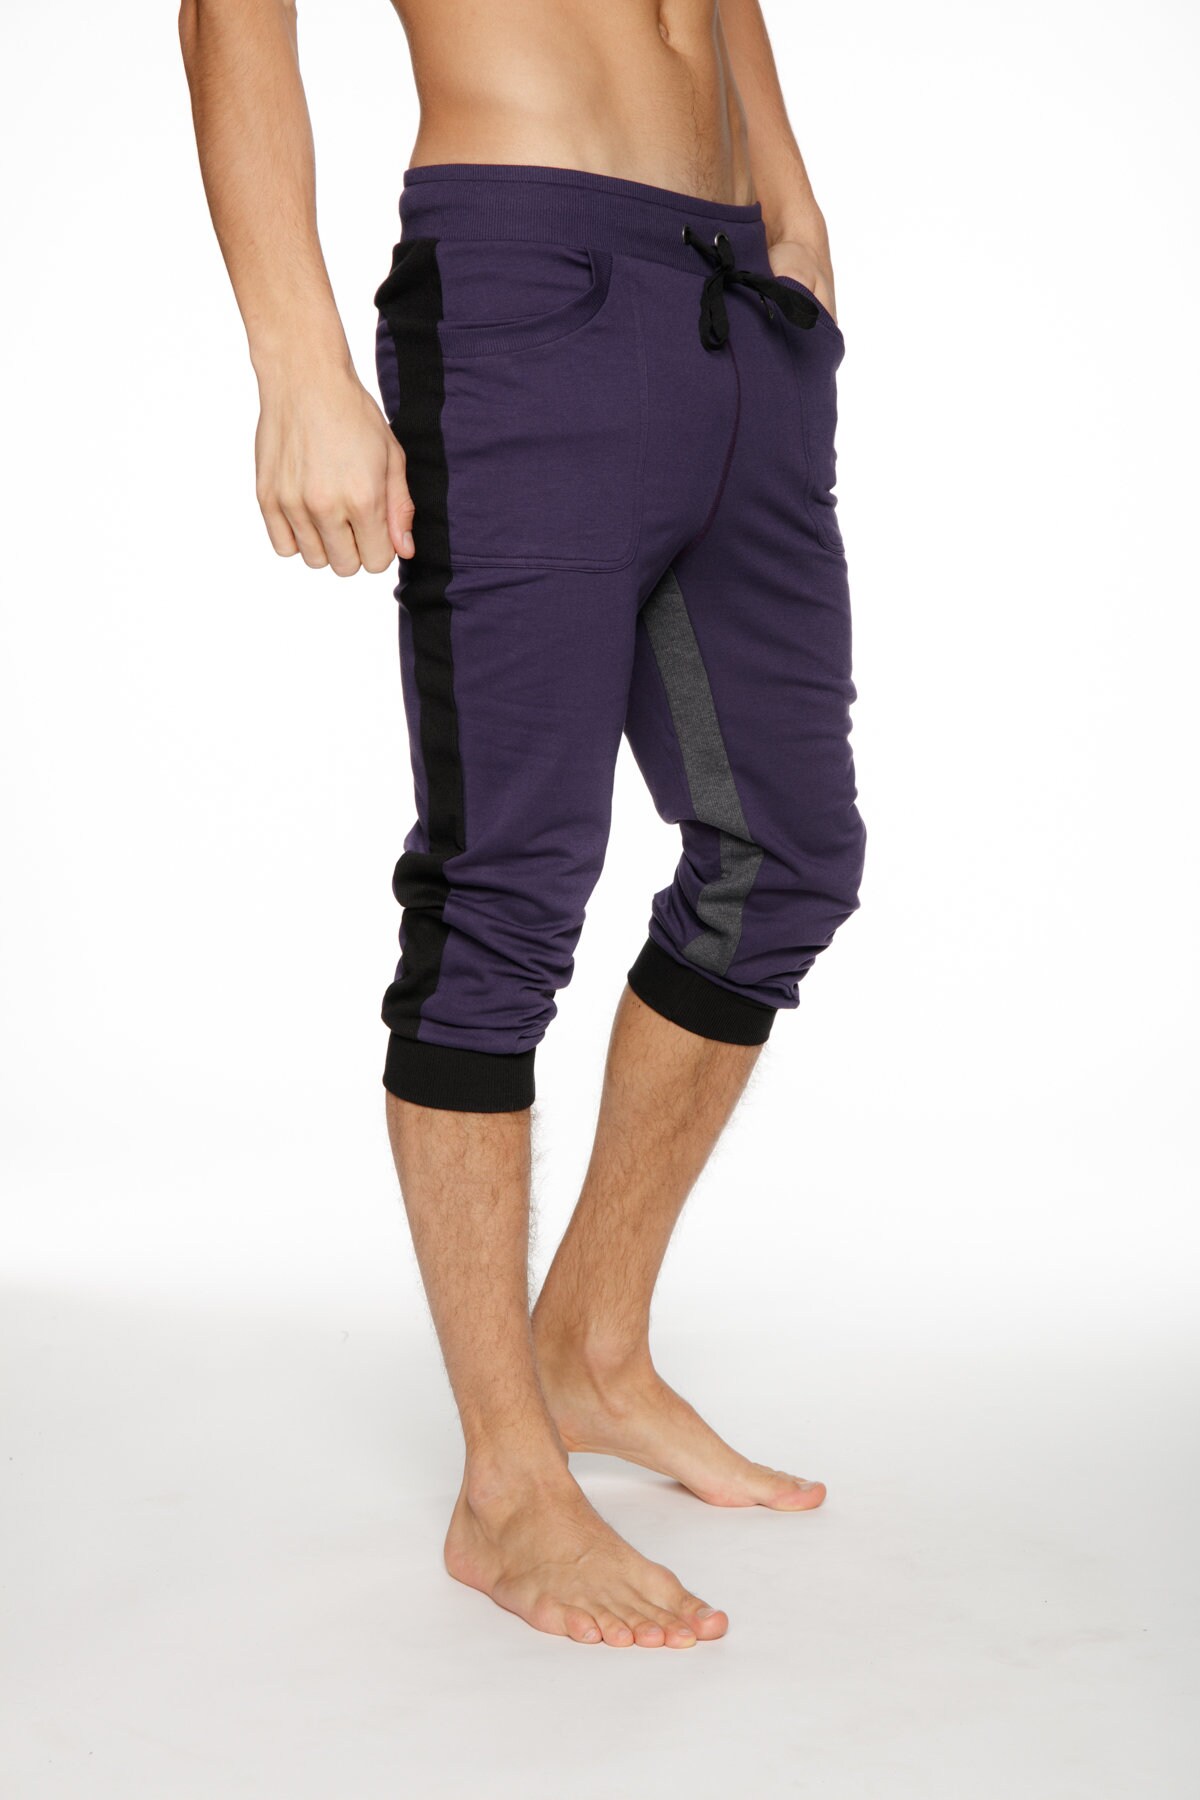 Ultra-flex Tri-color Cuffed Yoga Pant - Etsy